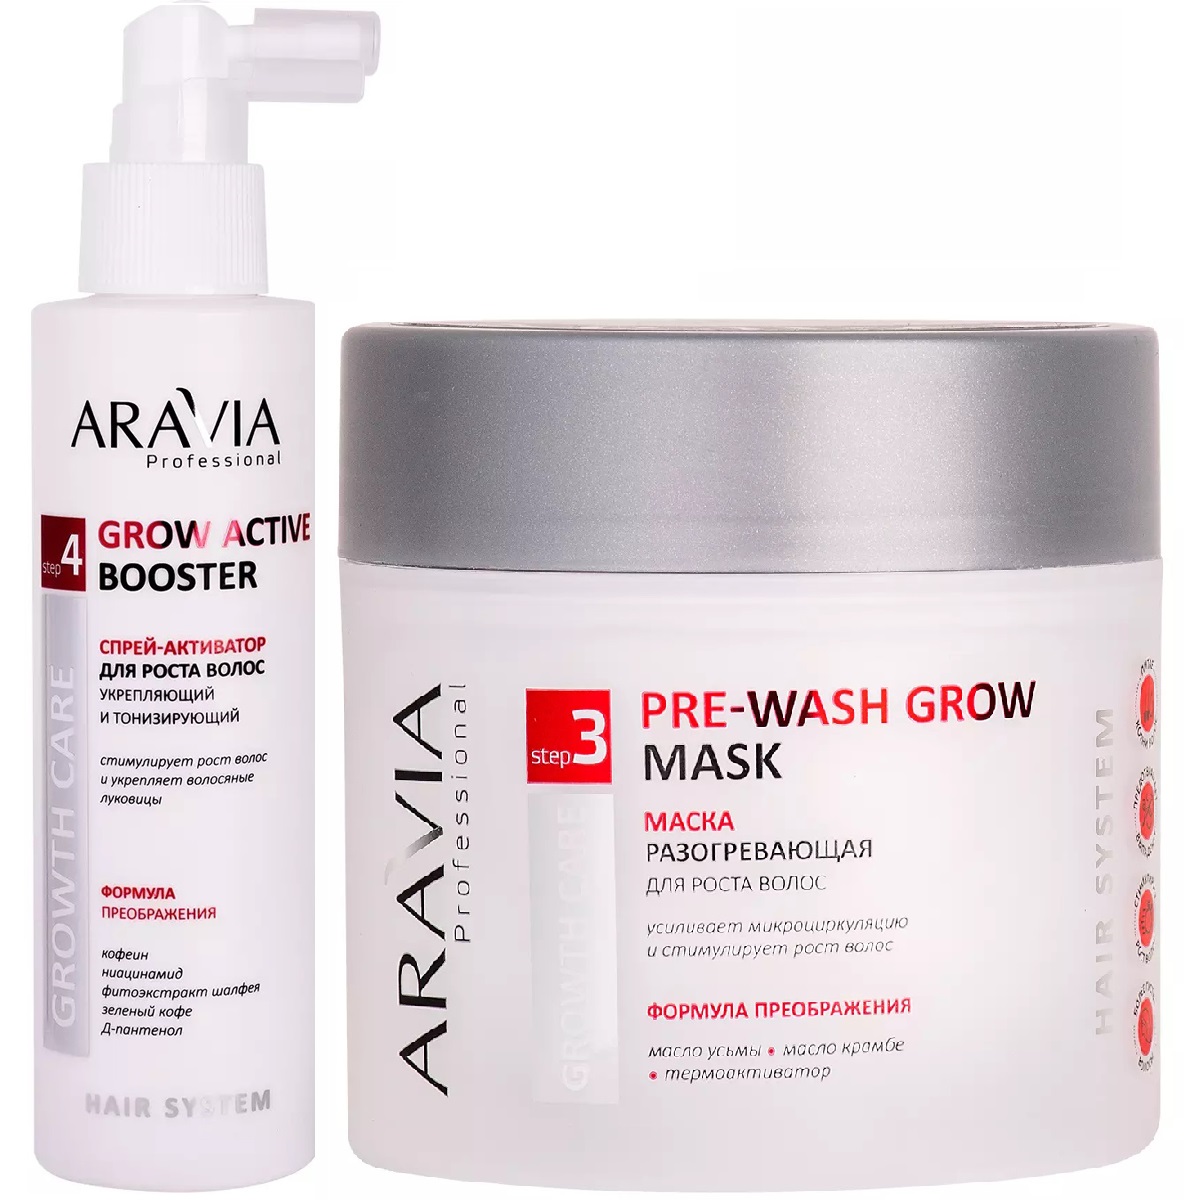 Aravia Professional Набор Укрепление и рост волос: спрей-активатор, 150 мл + маска, 300 мл (Aravia Professional, Уход за волосами)